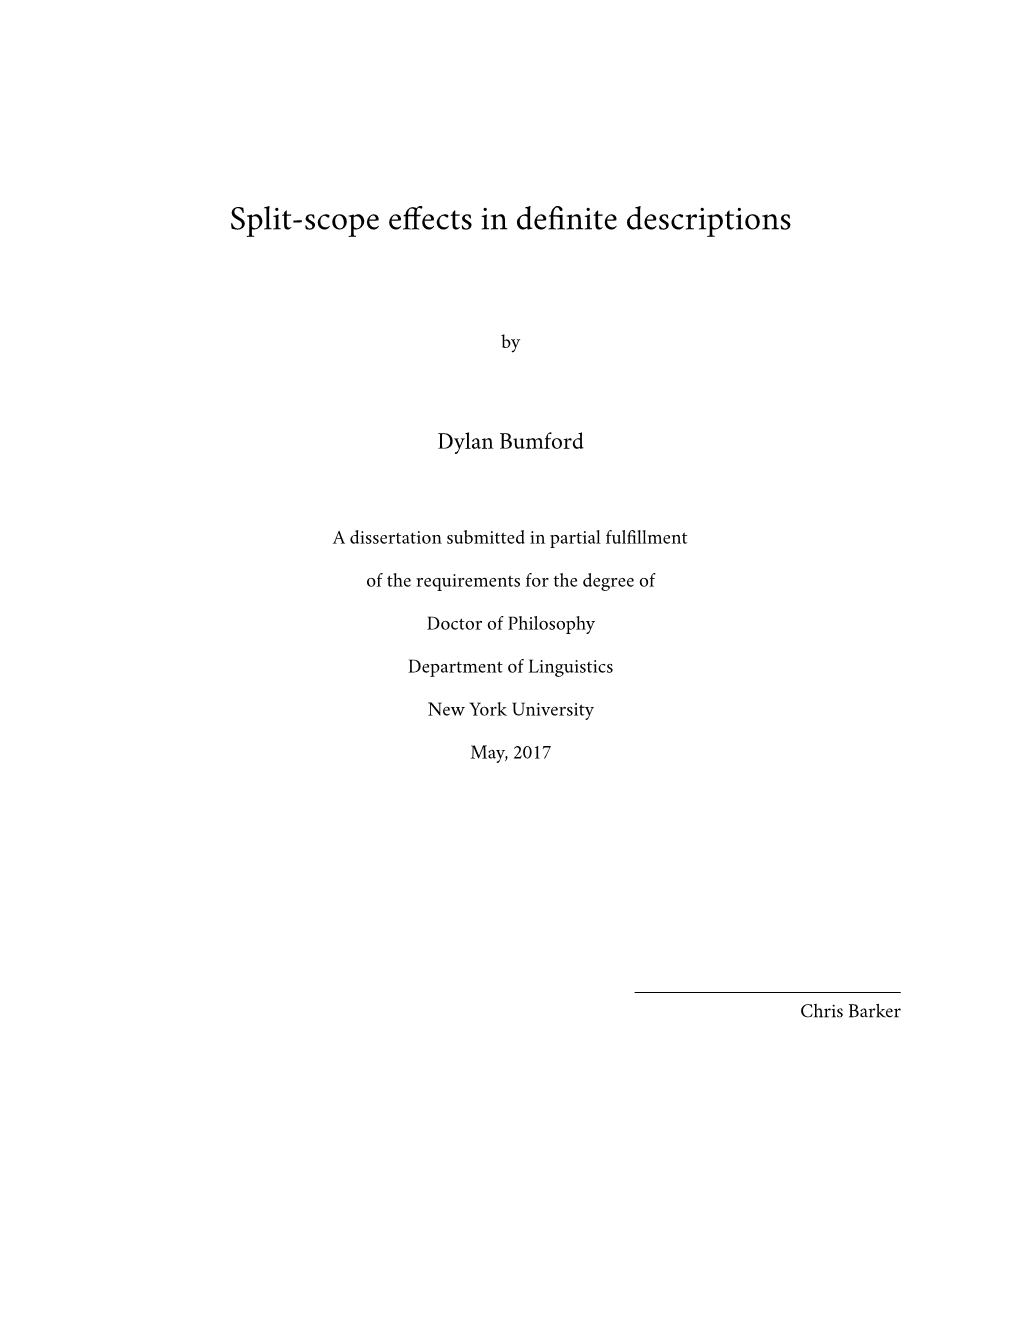 Split-Scope Effects in Definite Descriptions